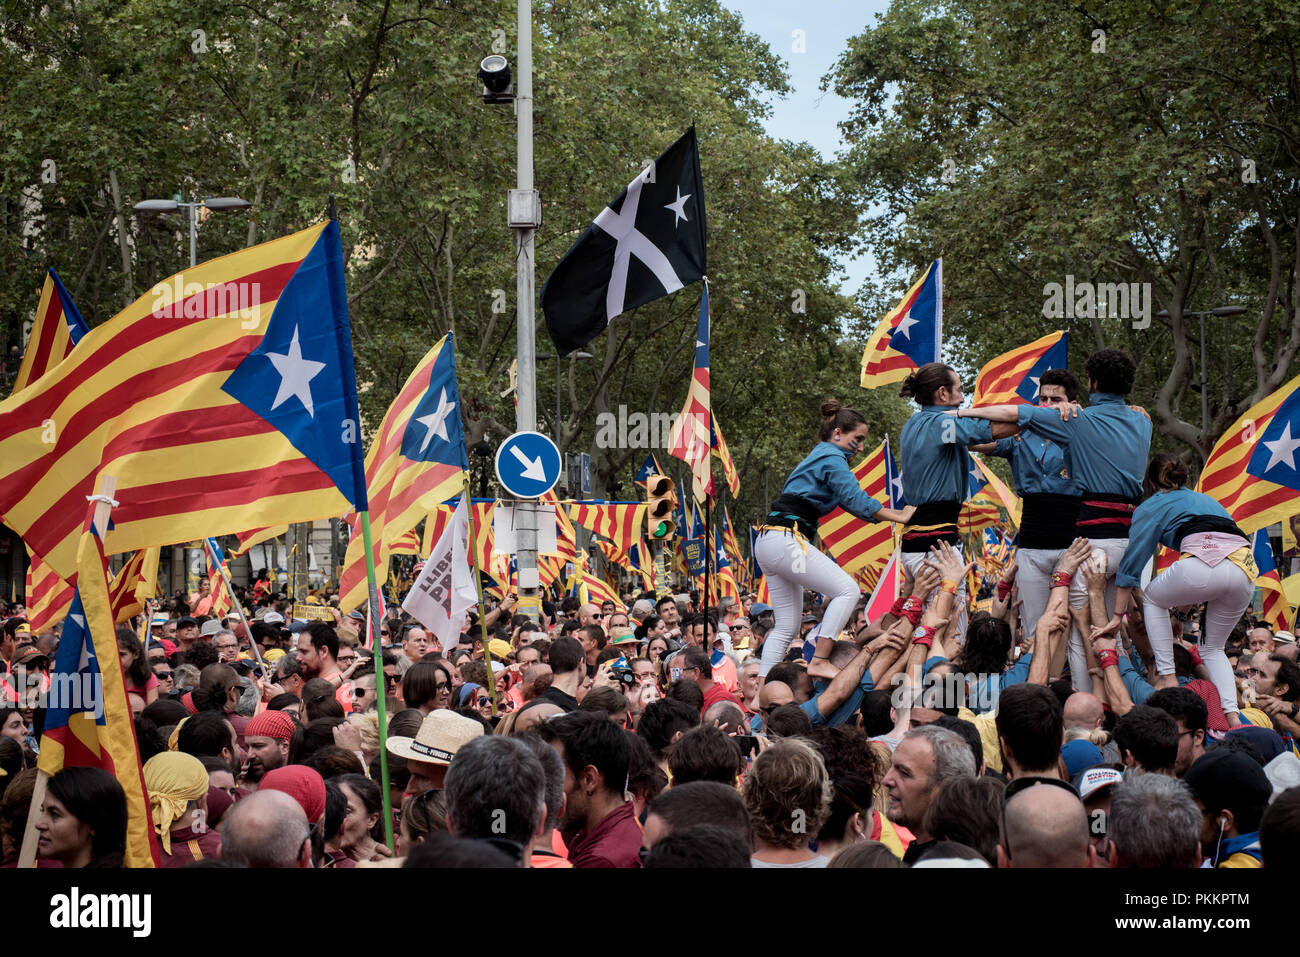 Castellers Form einer menschlichen Turm als Tausende pro-unabhängigkeit Demonstranten März in Barcelona während la Iada. Katalanen gefeiert La Iada oder in Katalonien Nationalfeiertag in einer Atmosphäre der Konflikt mit der spanischen Regierung für den Inhaftierten städtischer Abgeordneter Führer und einer Demonstration für die Unabhängigkeit. Stockfoto